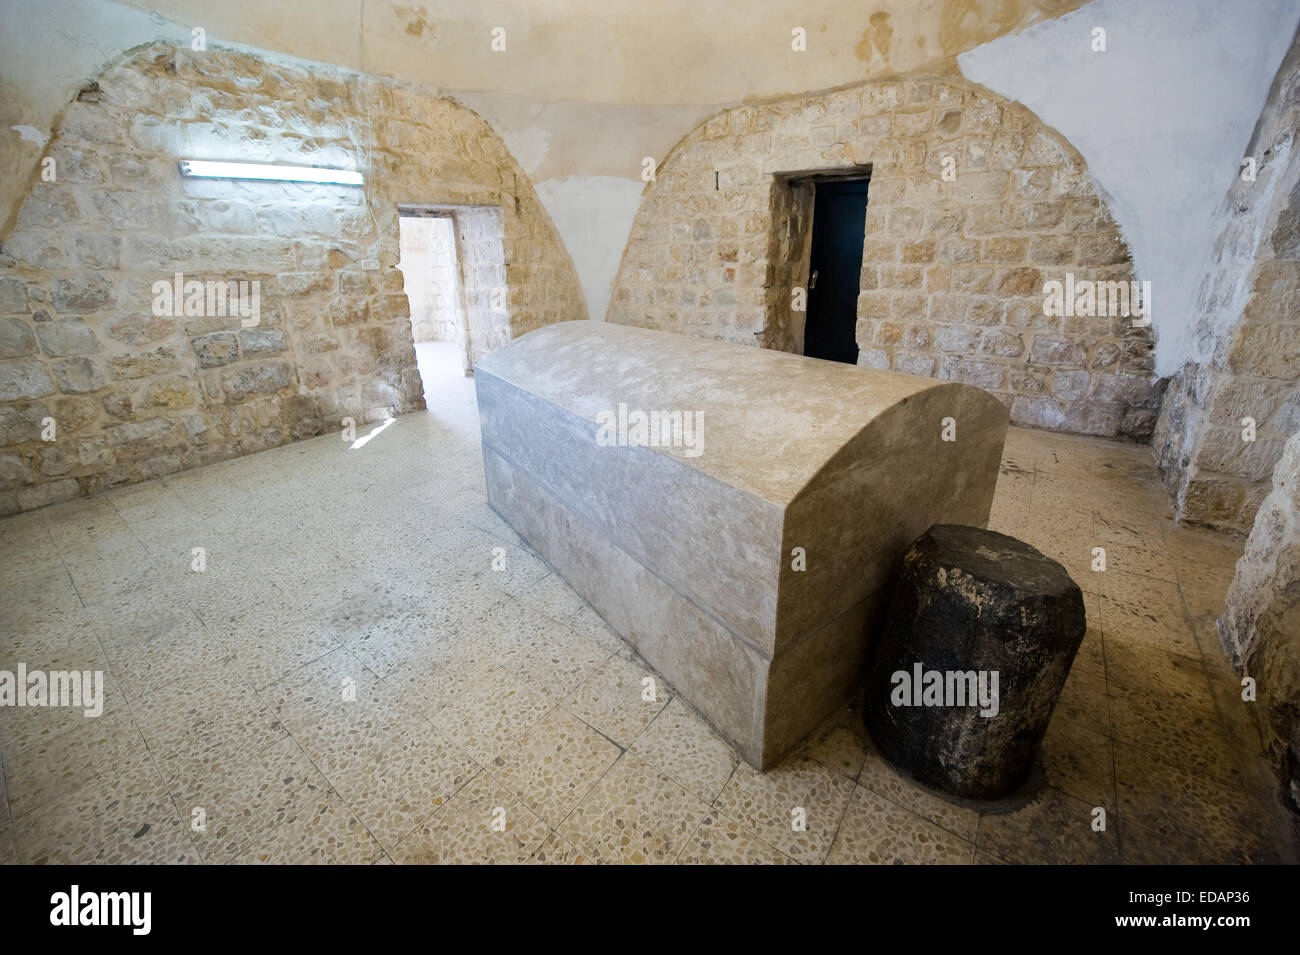 La tomba del patriarca Giuseppe in Nablus. Giuseppe è il figlio di Giacobbe. Egli è qui sepolto con i suoi due figli Manasse ed Efraim Foto Stock